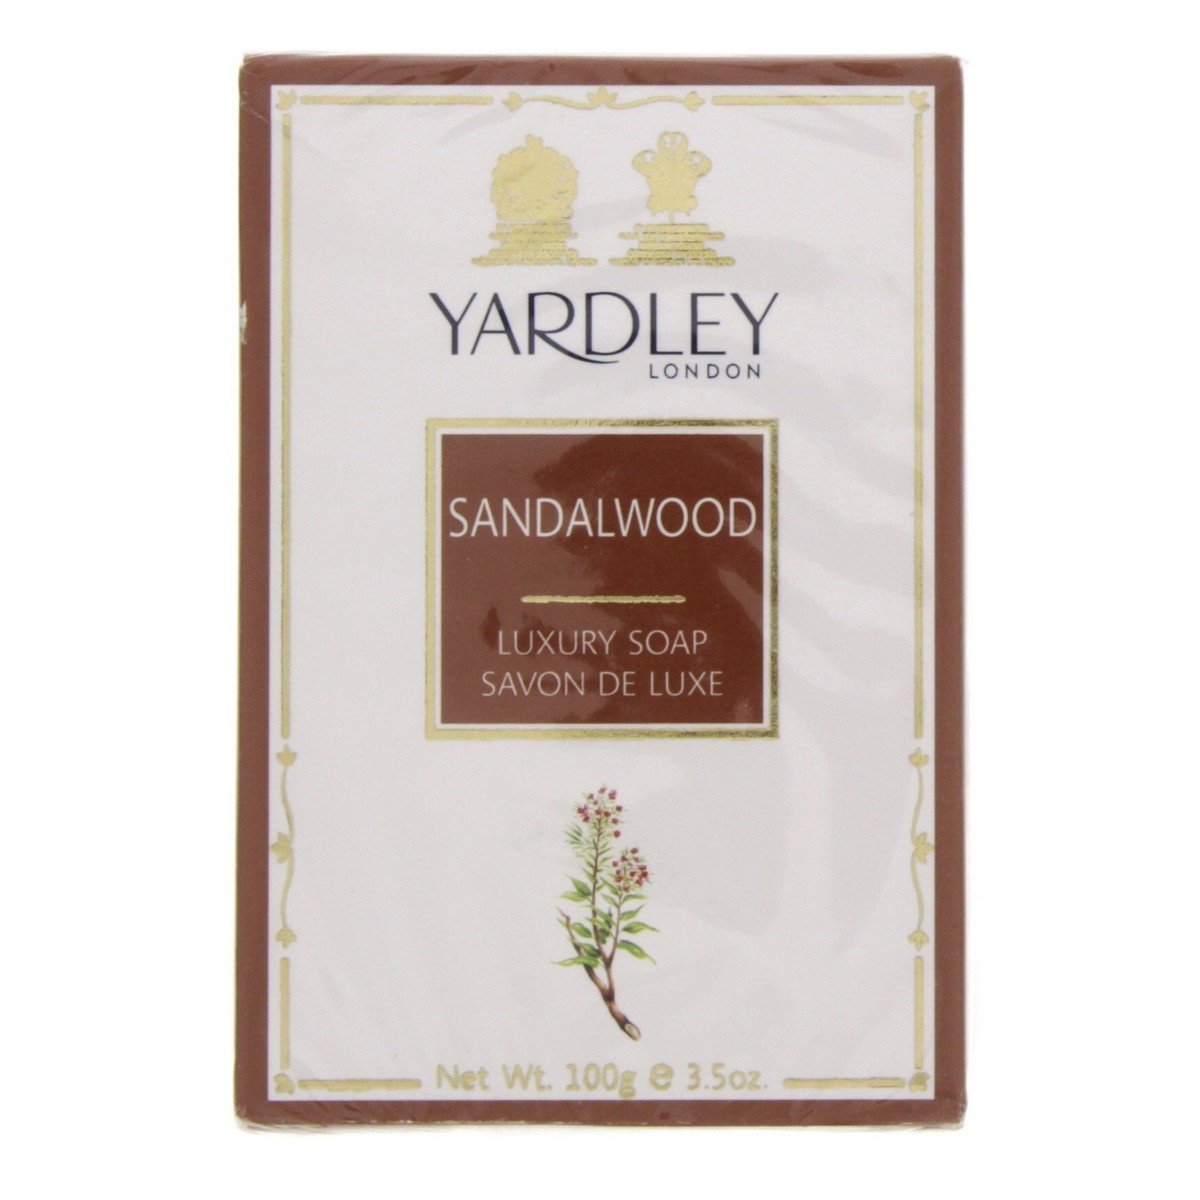 Yardley Sandalwood Luxury Soap, 100 g